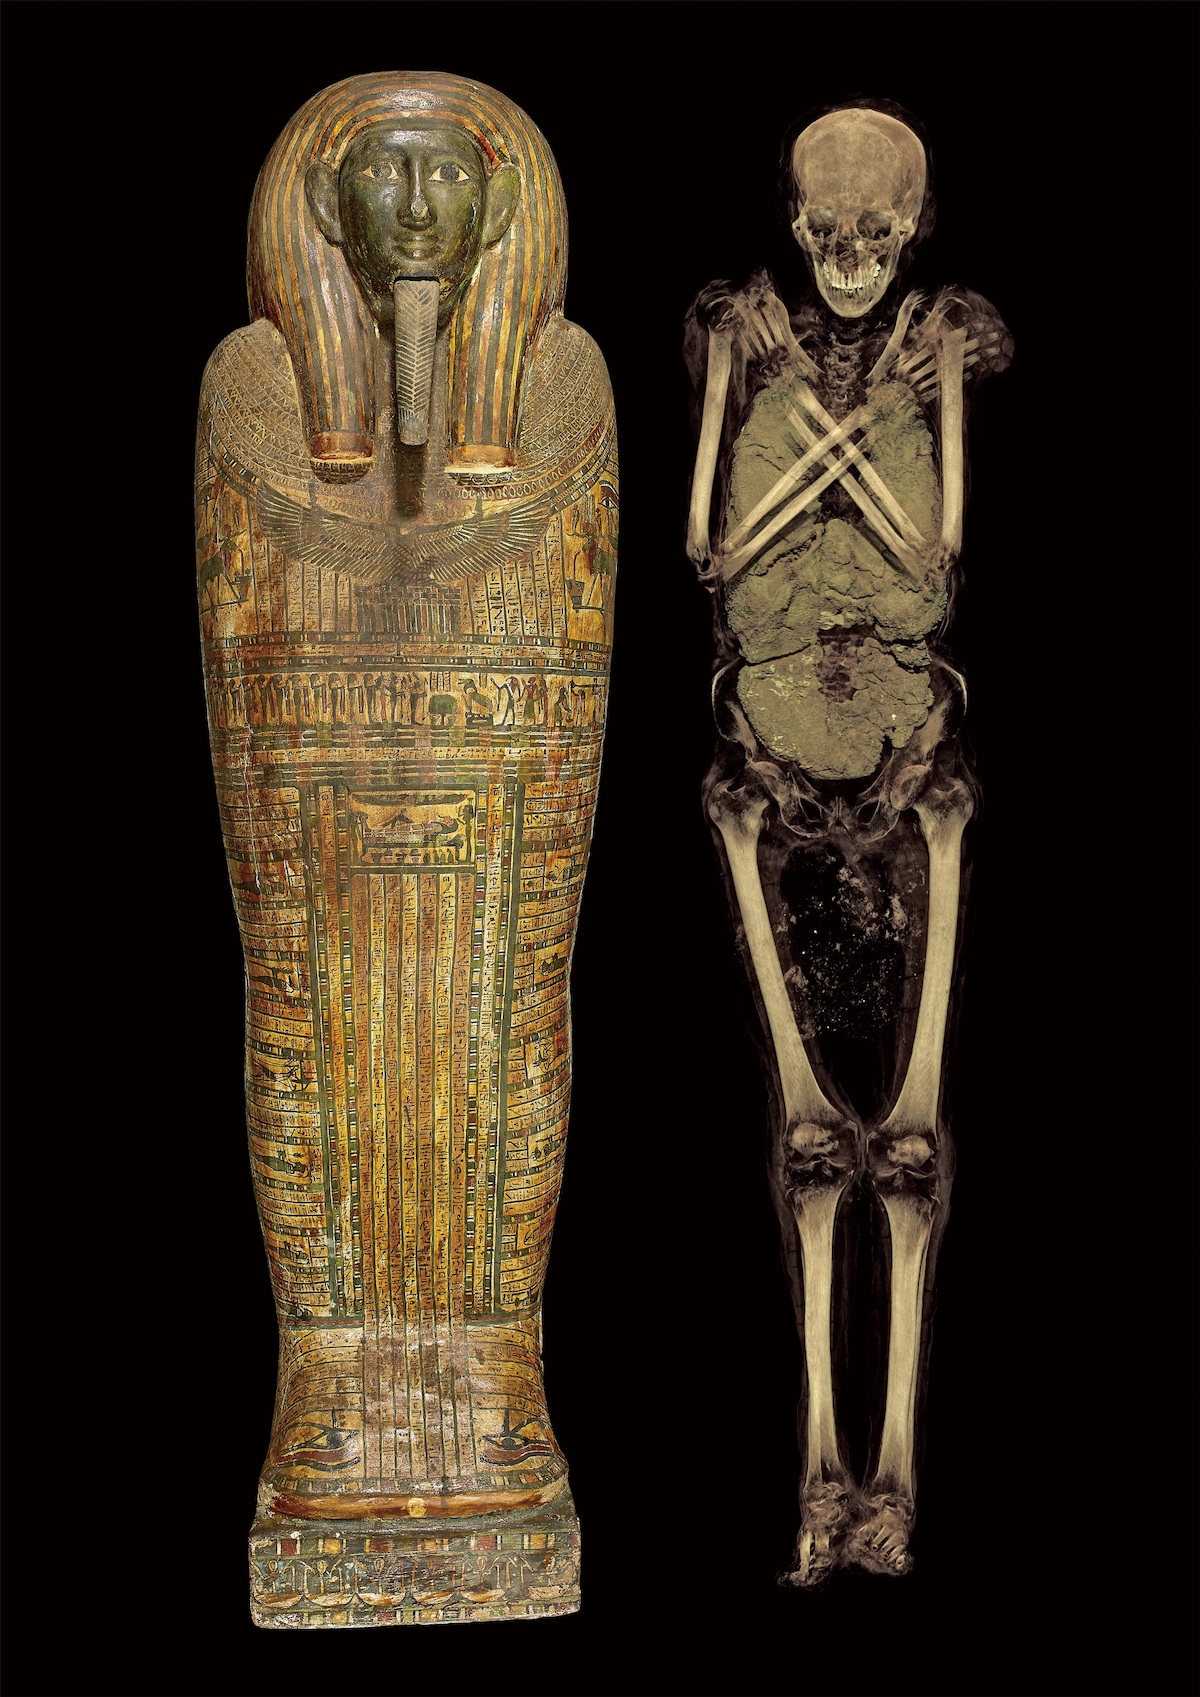 アメンイリイレトの内棺と、ミイラのCTスキャン画像から作成した3次元構築画像
末期王朝時代・第26王朝、前600年頃、大英博物館蔵、
© The Trustees of the British Museum
